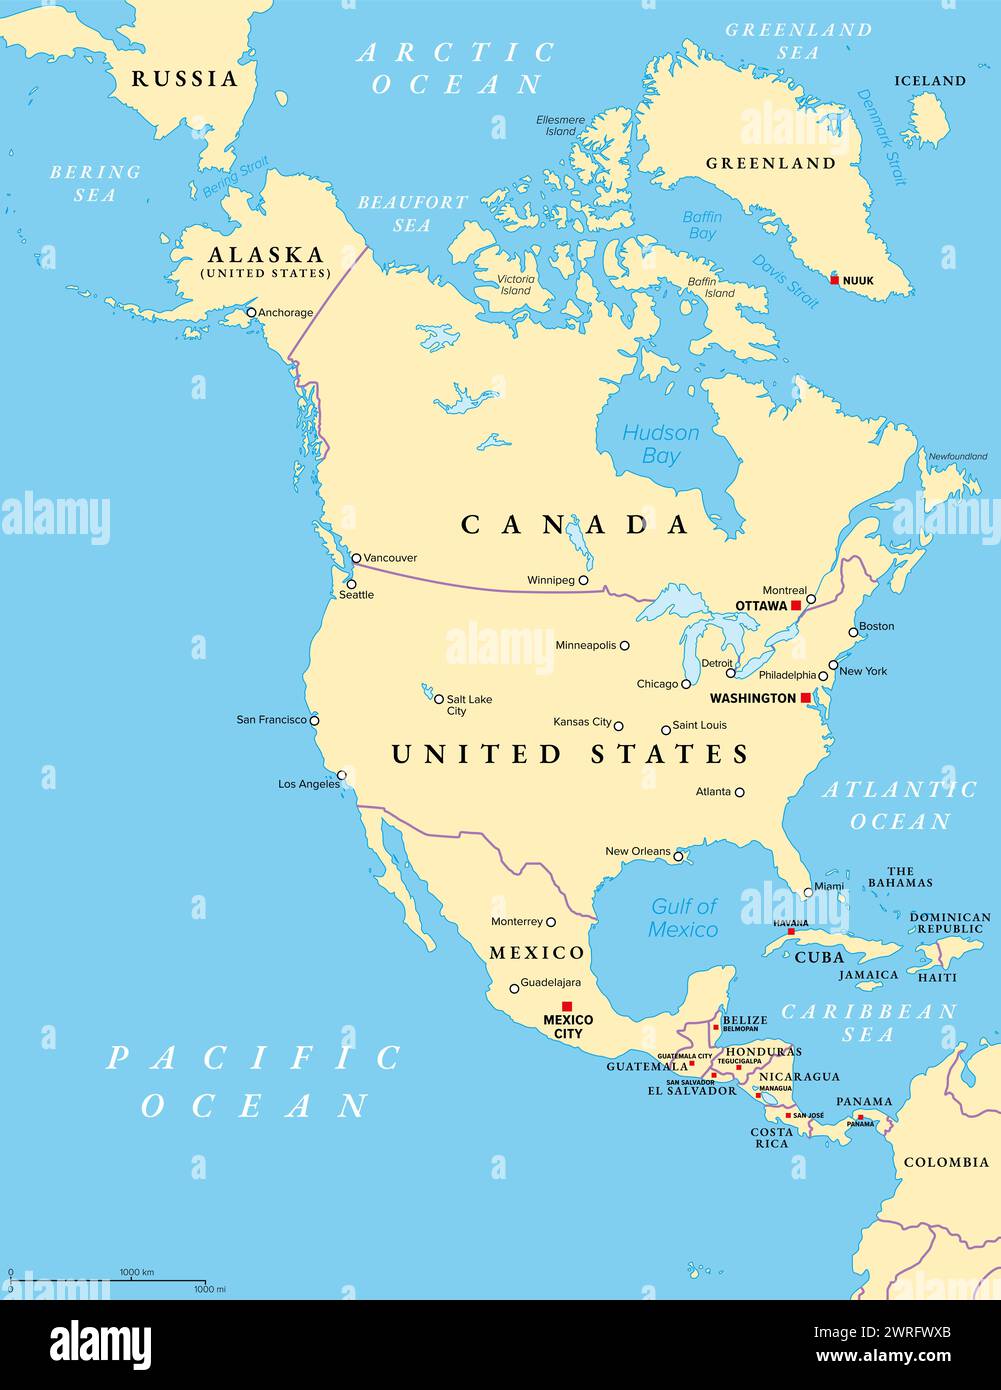 Nordamerika, politische Karte. Kontinent grenzt an Südamerika, das Karibische Meer und den Arktischen, Atlantischen und Pazifischen Ozean. Stockfoto